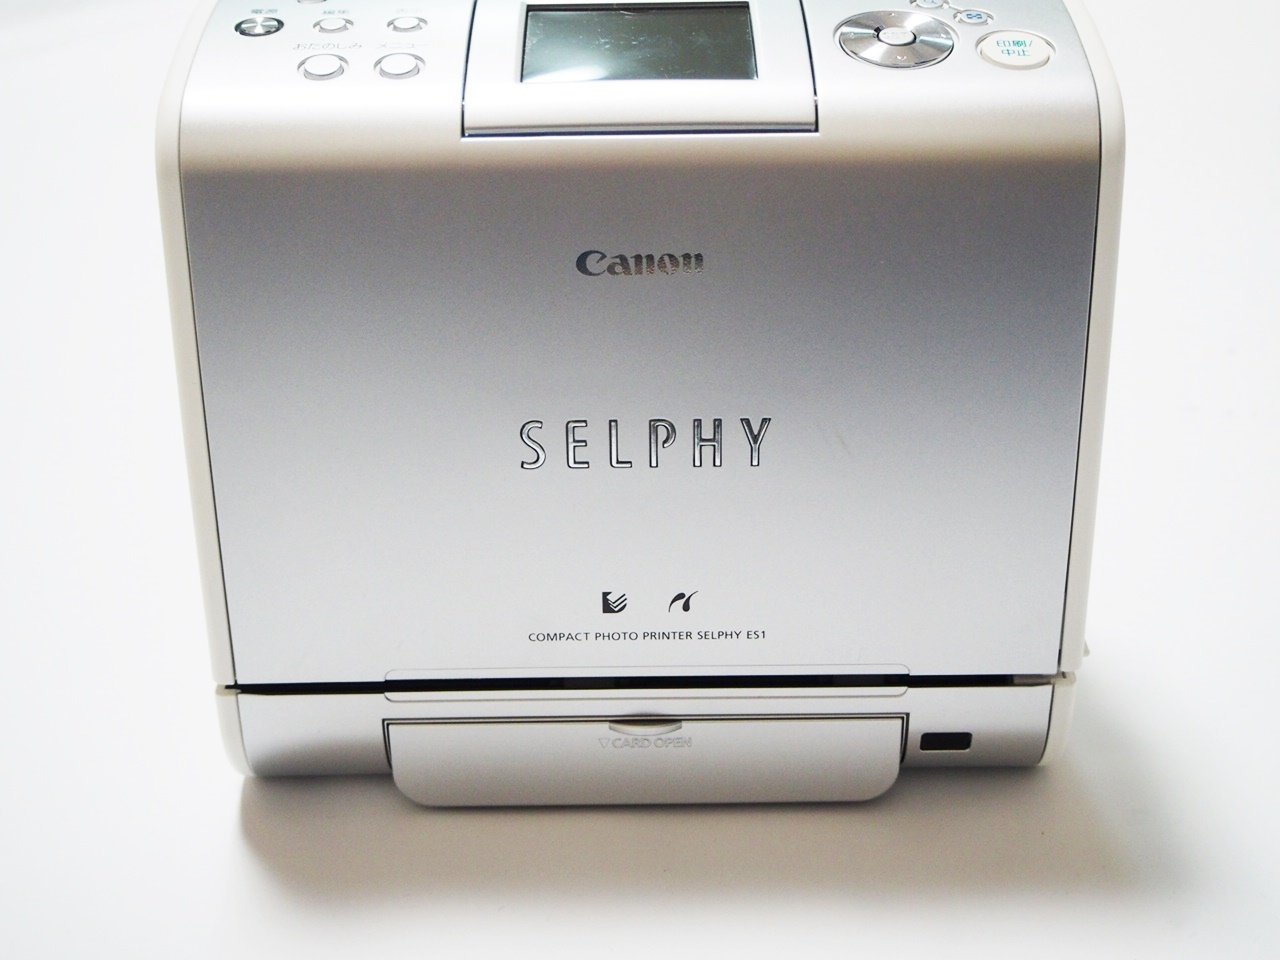 キヤノン セルフィー SELPHY ES1 フォトプリンターの商品画像